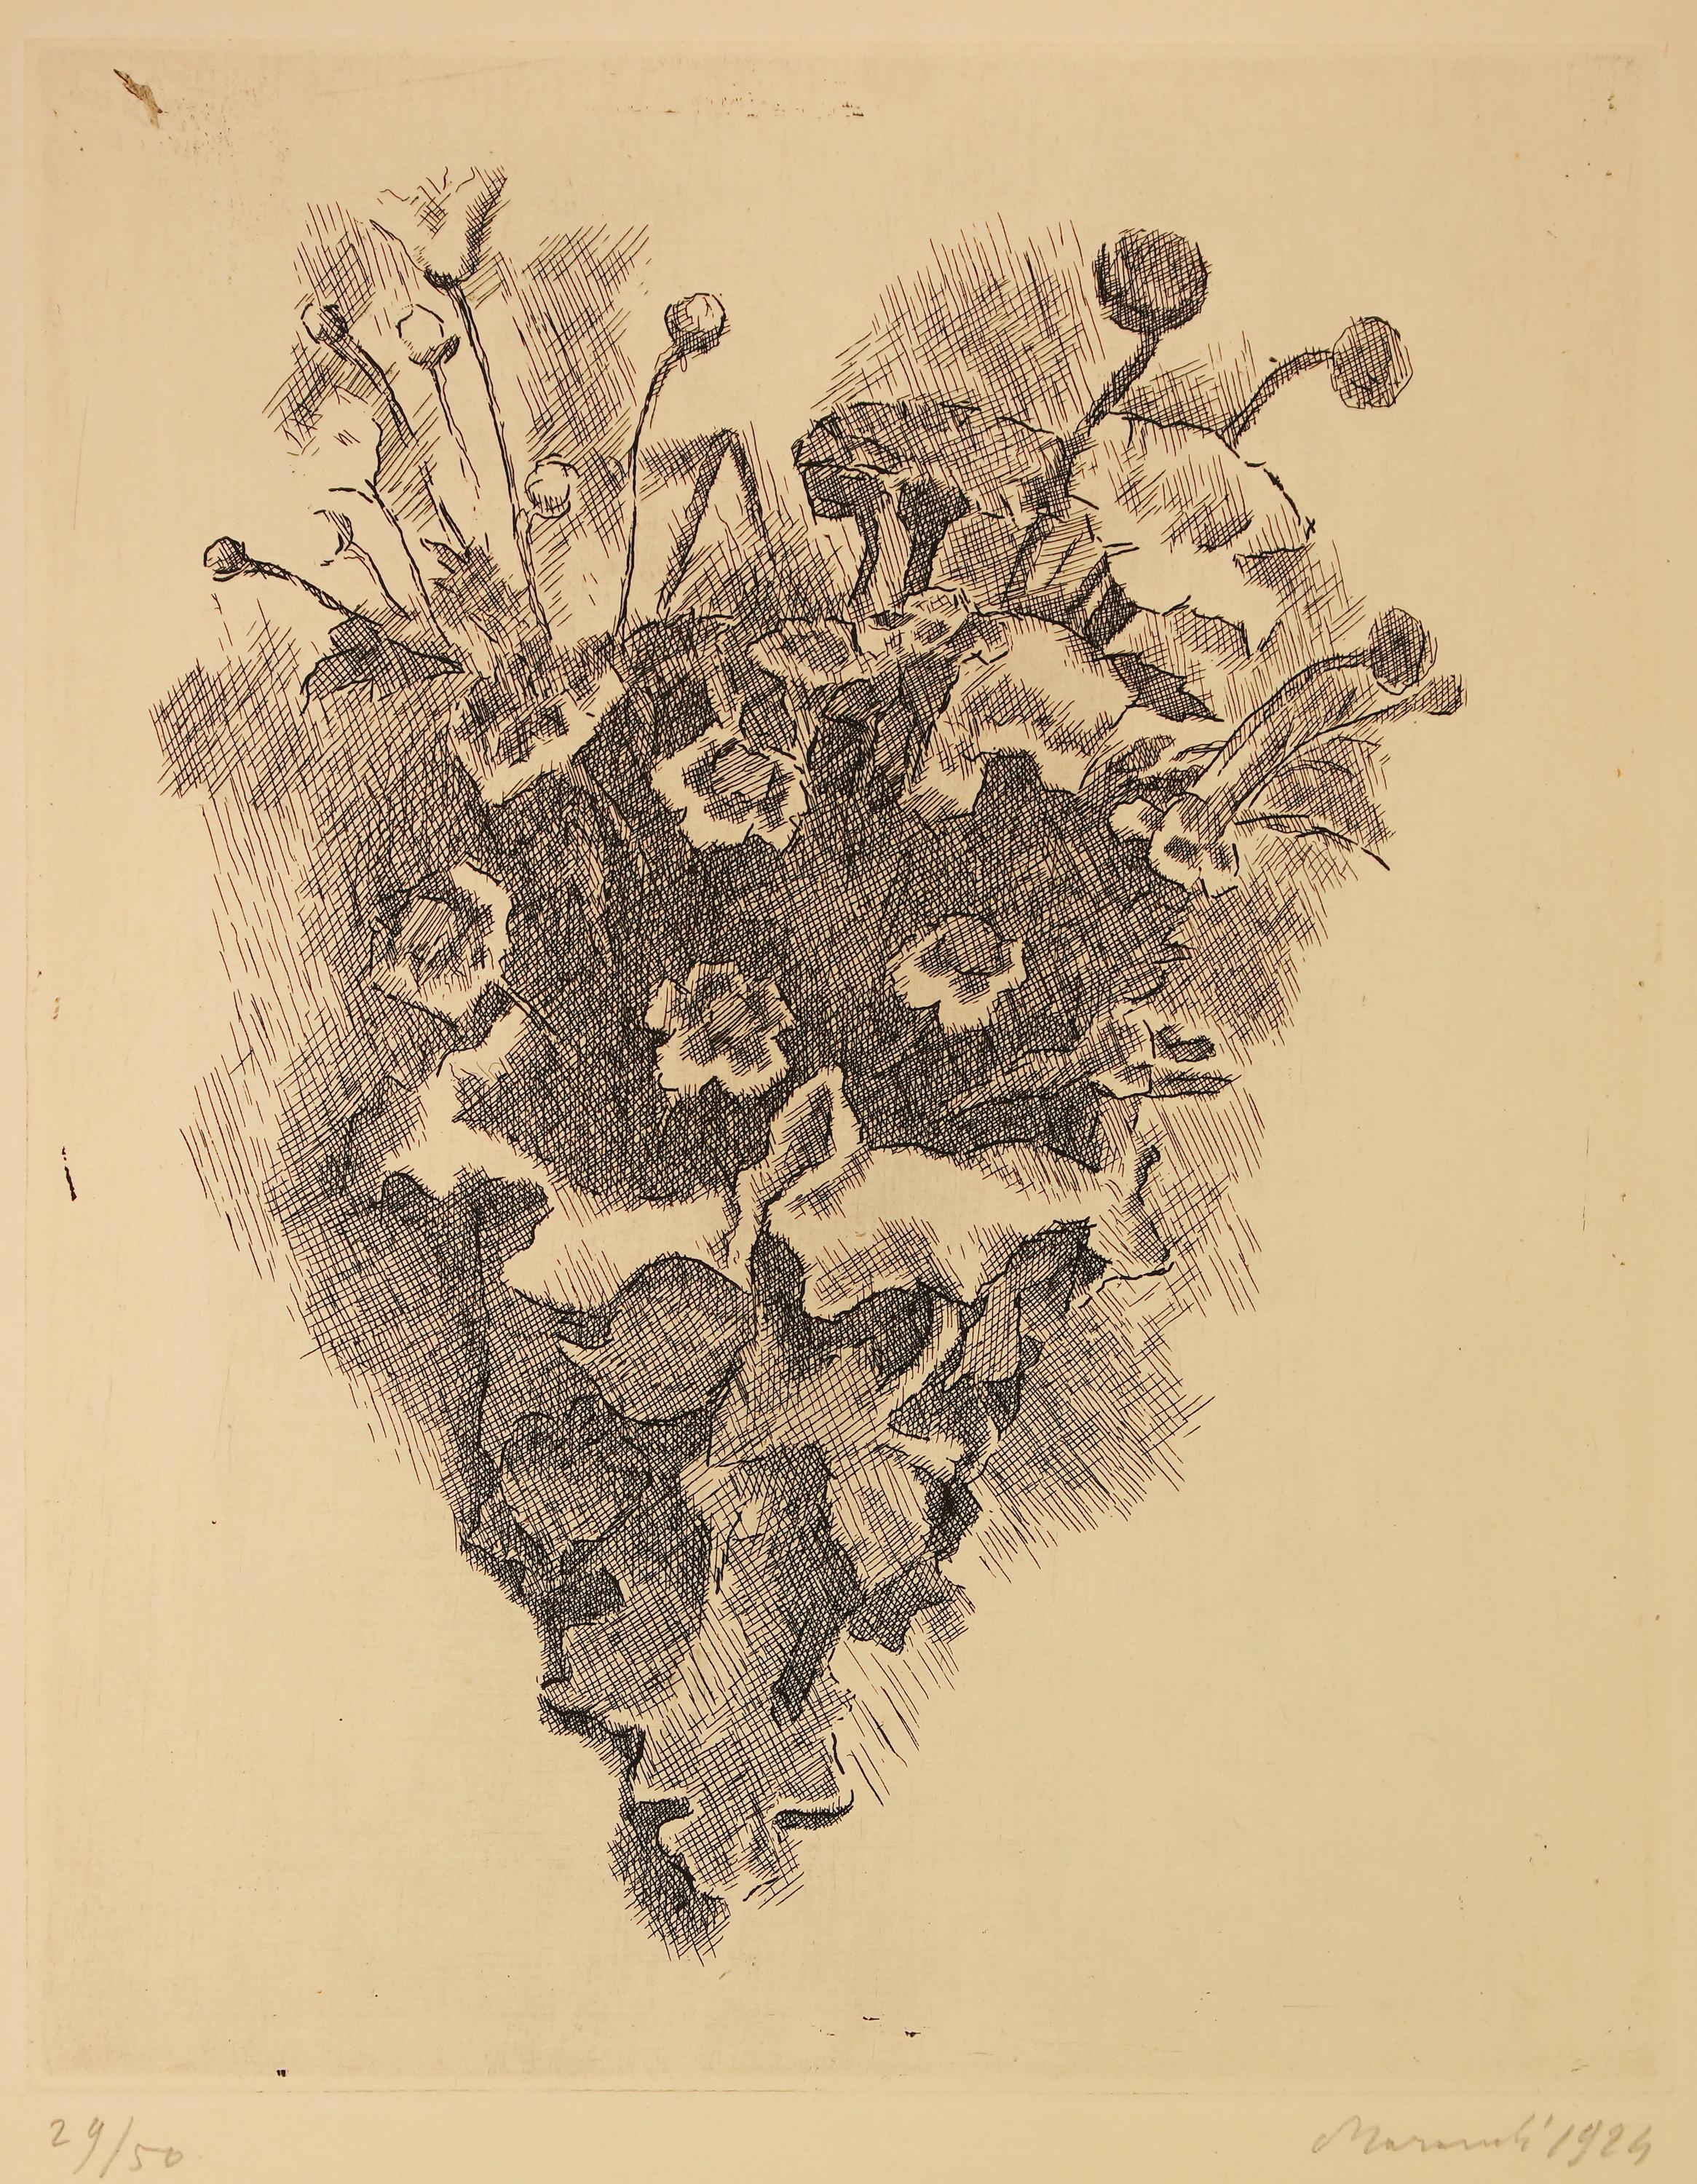 Cornetto con fiori di campo est une œuvre d'art originale réalisée par Giorgio Morandi en 1924. Gravure sur papier. Signé à la main et daté dans la marge inférieure droite. Edition de 50 tirages dont quelques exemplaires non numérotés.
Le